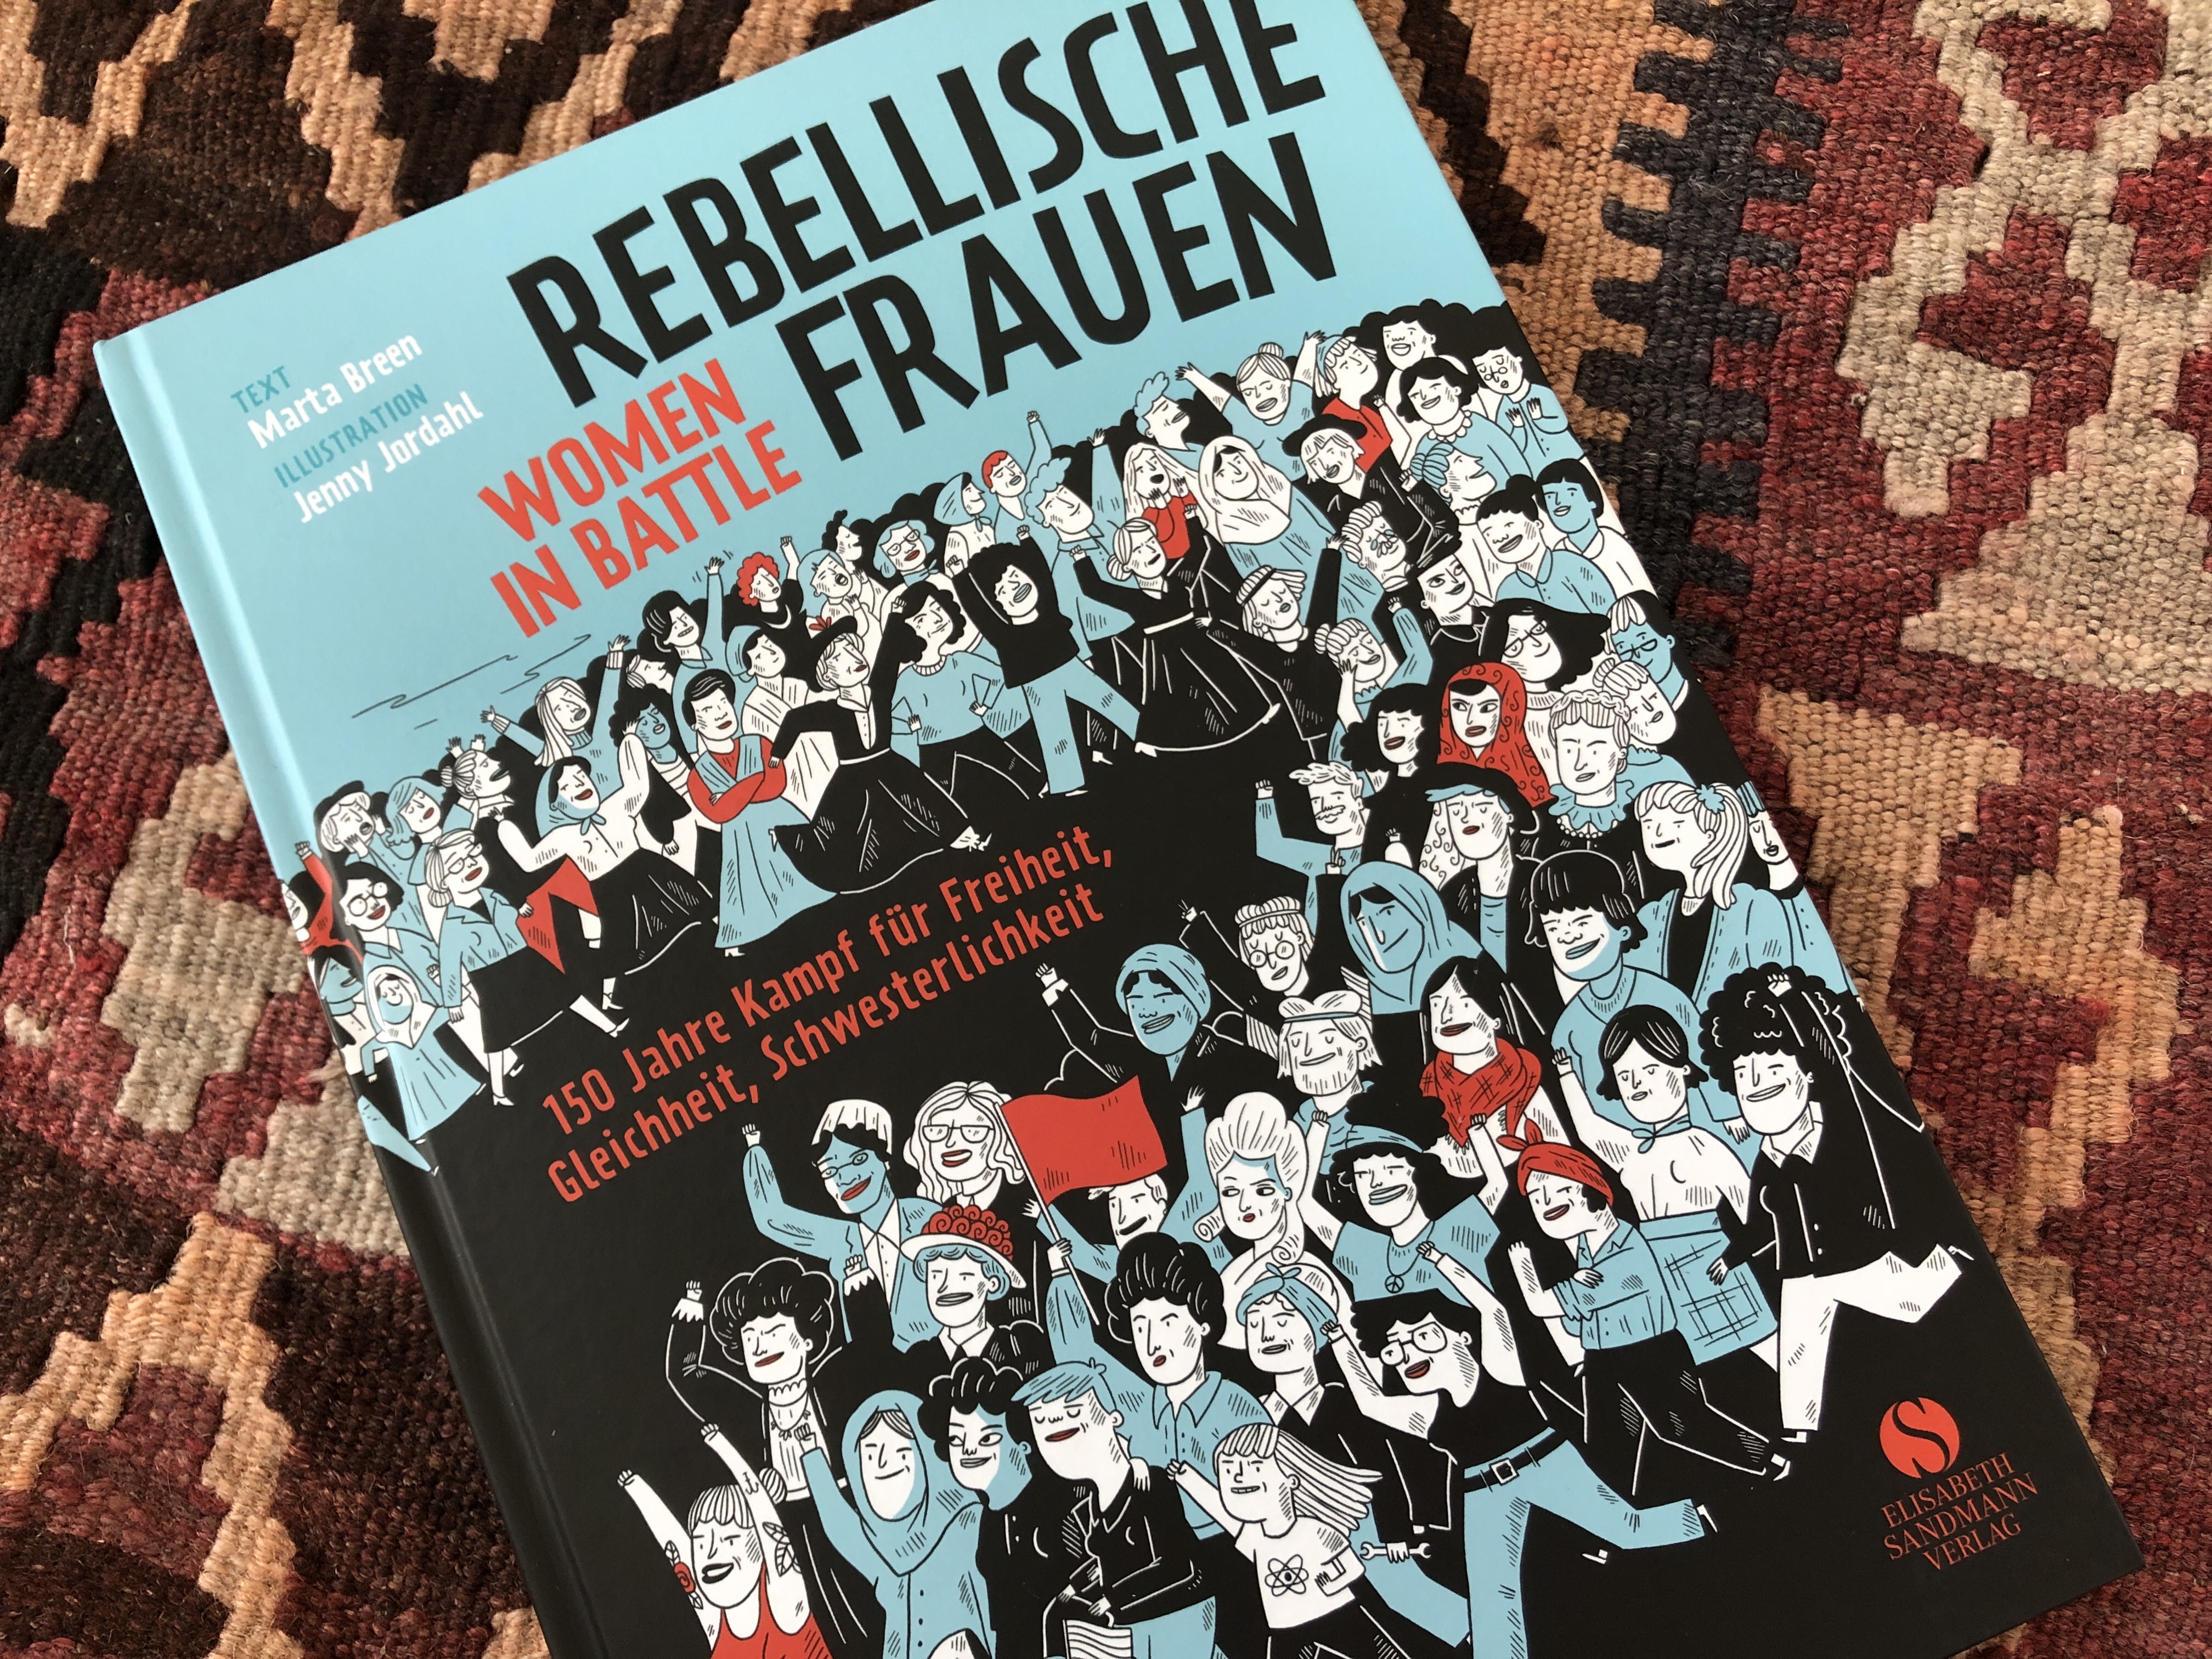 Rebellische Frauen von Marta Breen und Jenny Jordahl